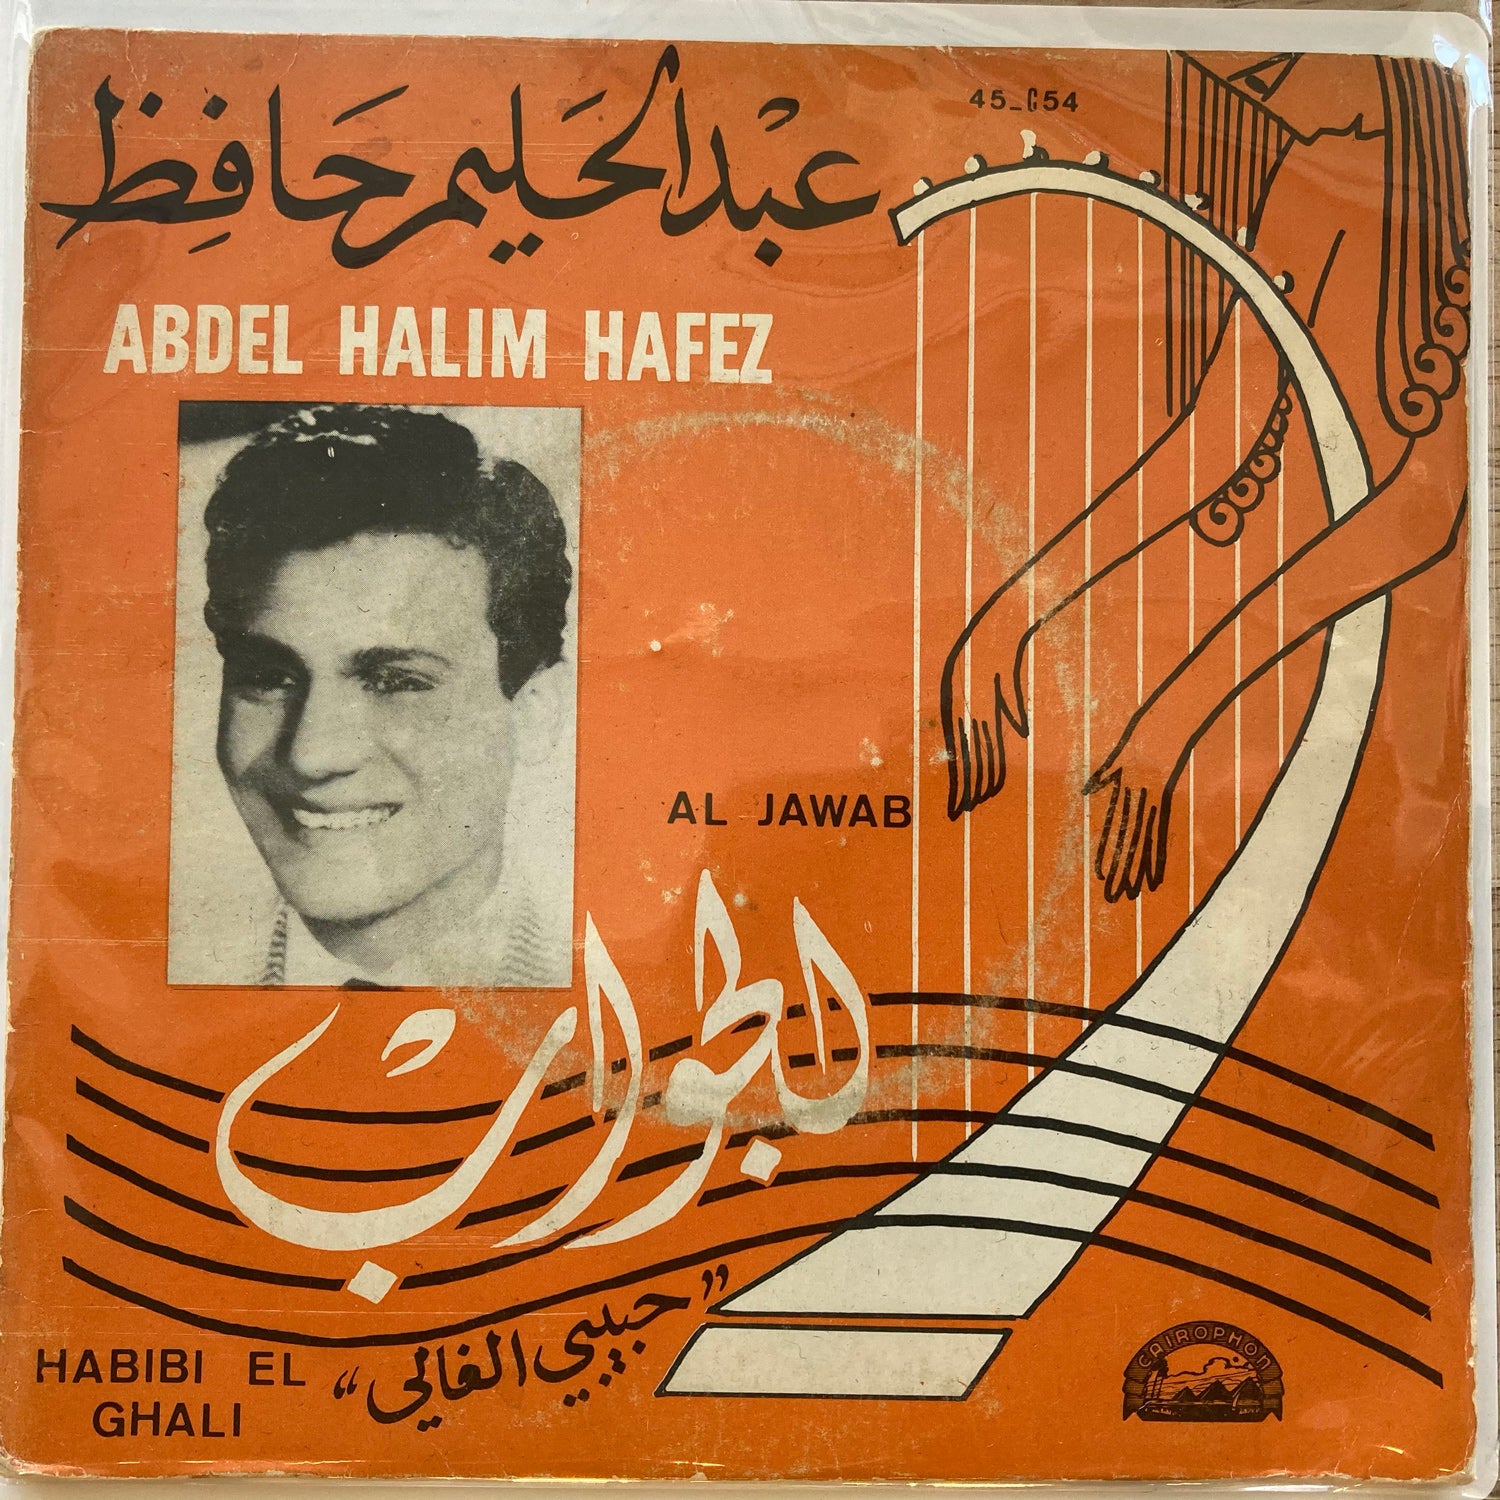 Abel Halim Hafez - Al Jawab / Habibi Ghali (7")